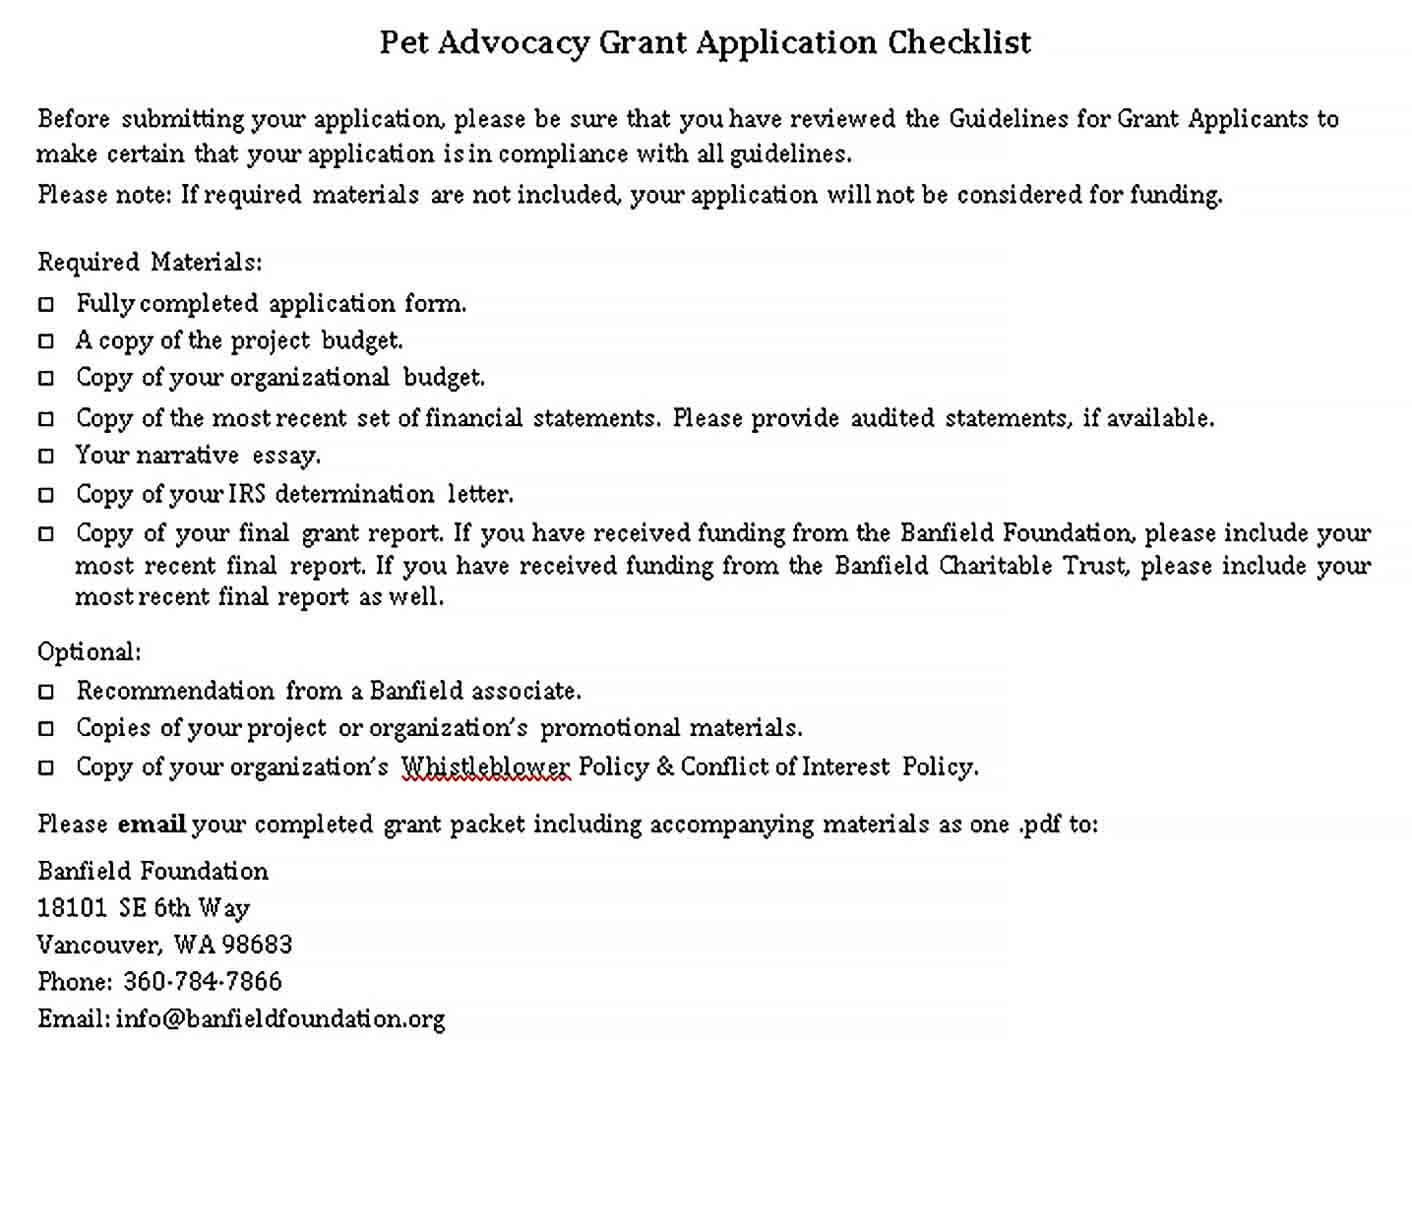 Sample Pet Advocacy Grant Checklist Template